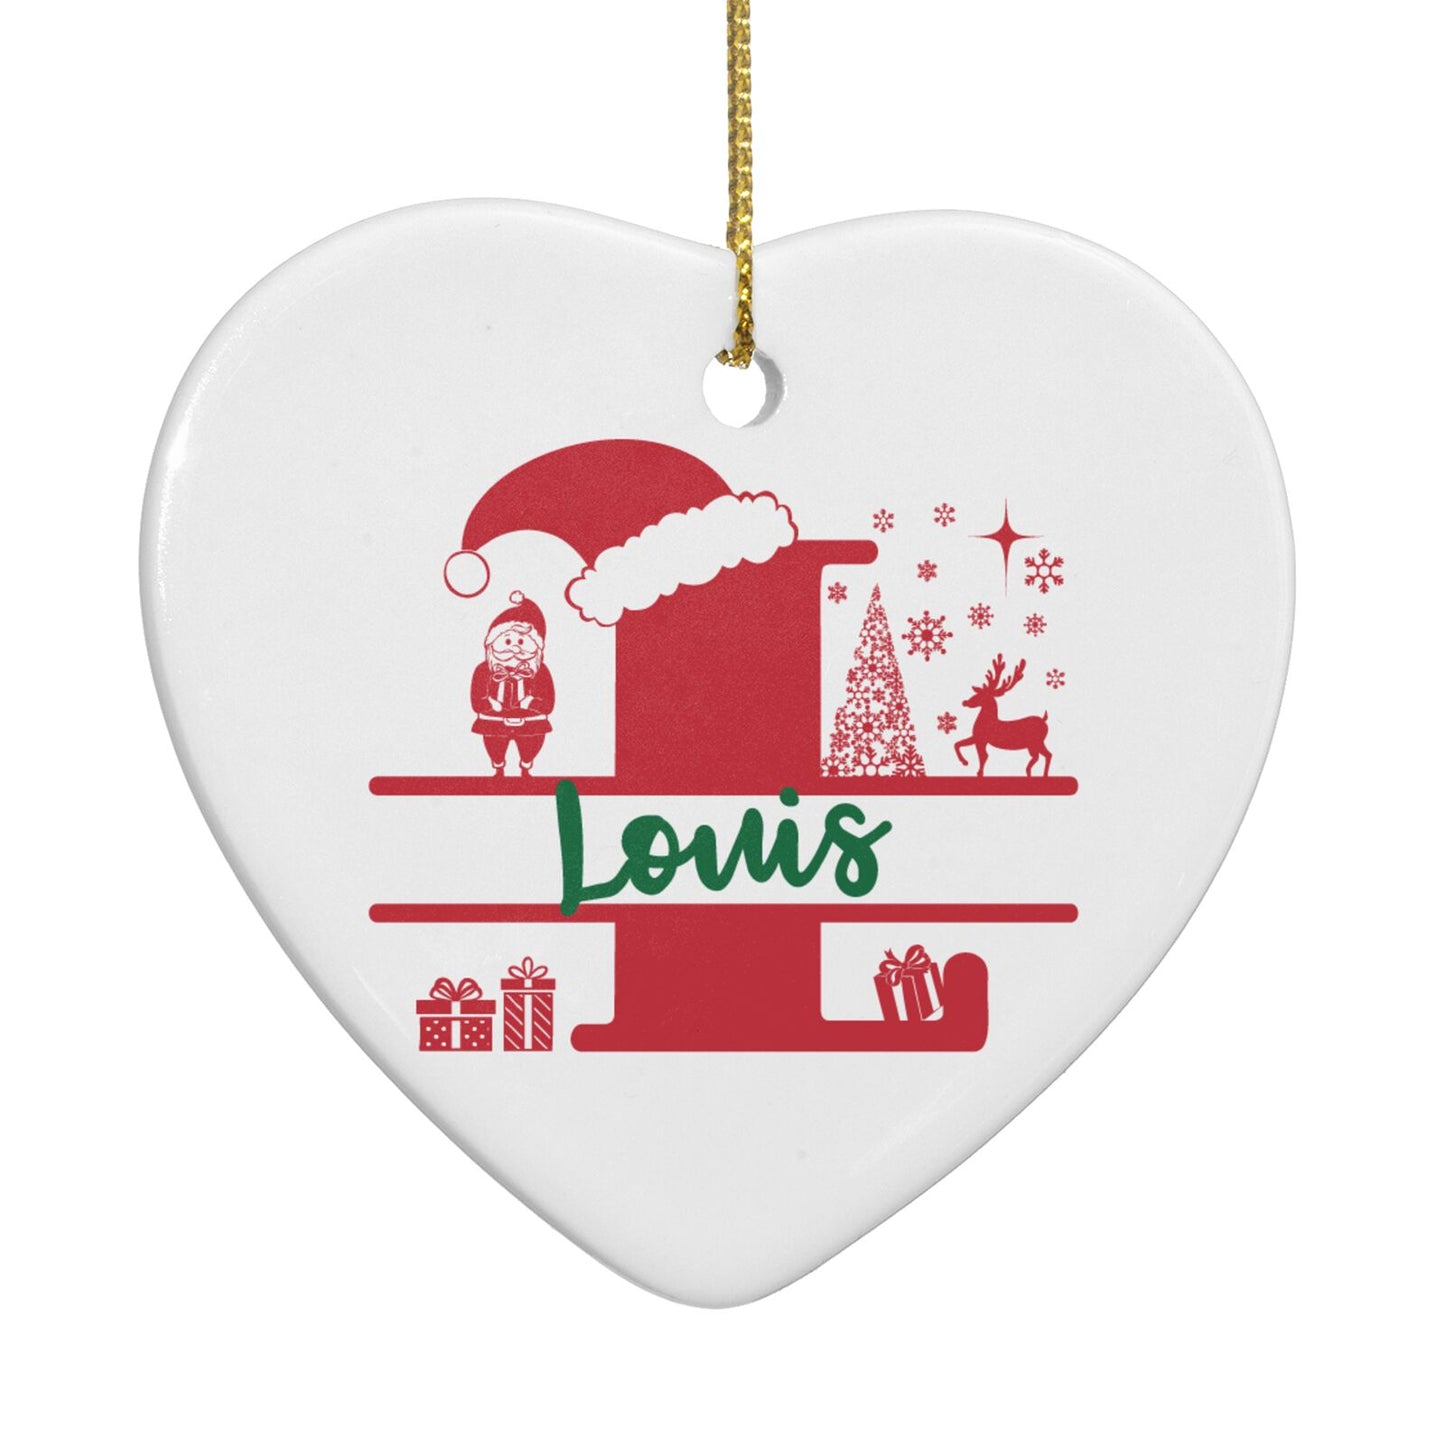 Personalised Christmas Monogram Heart Decoration Back Image